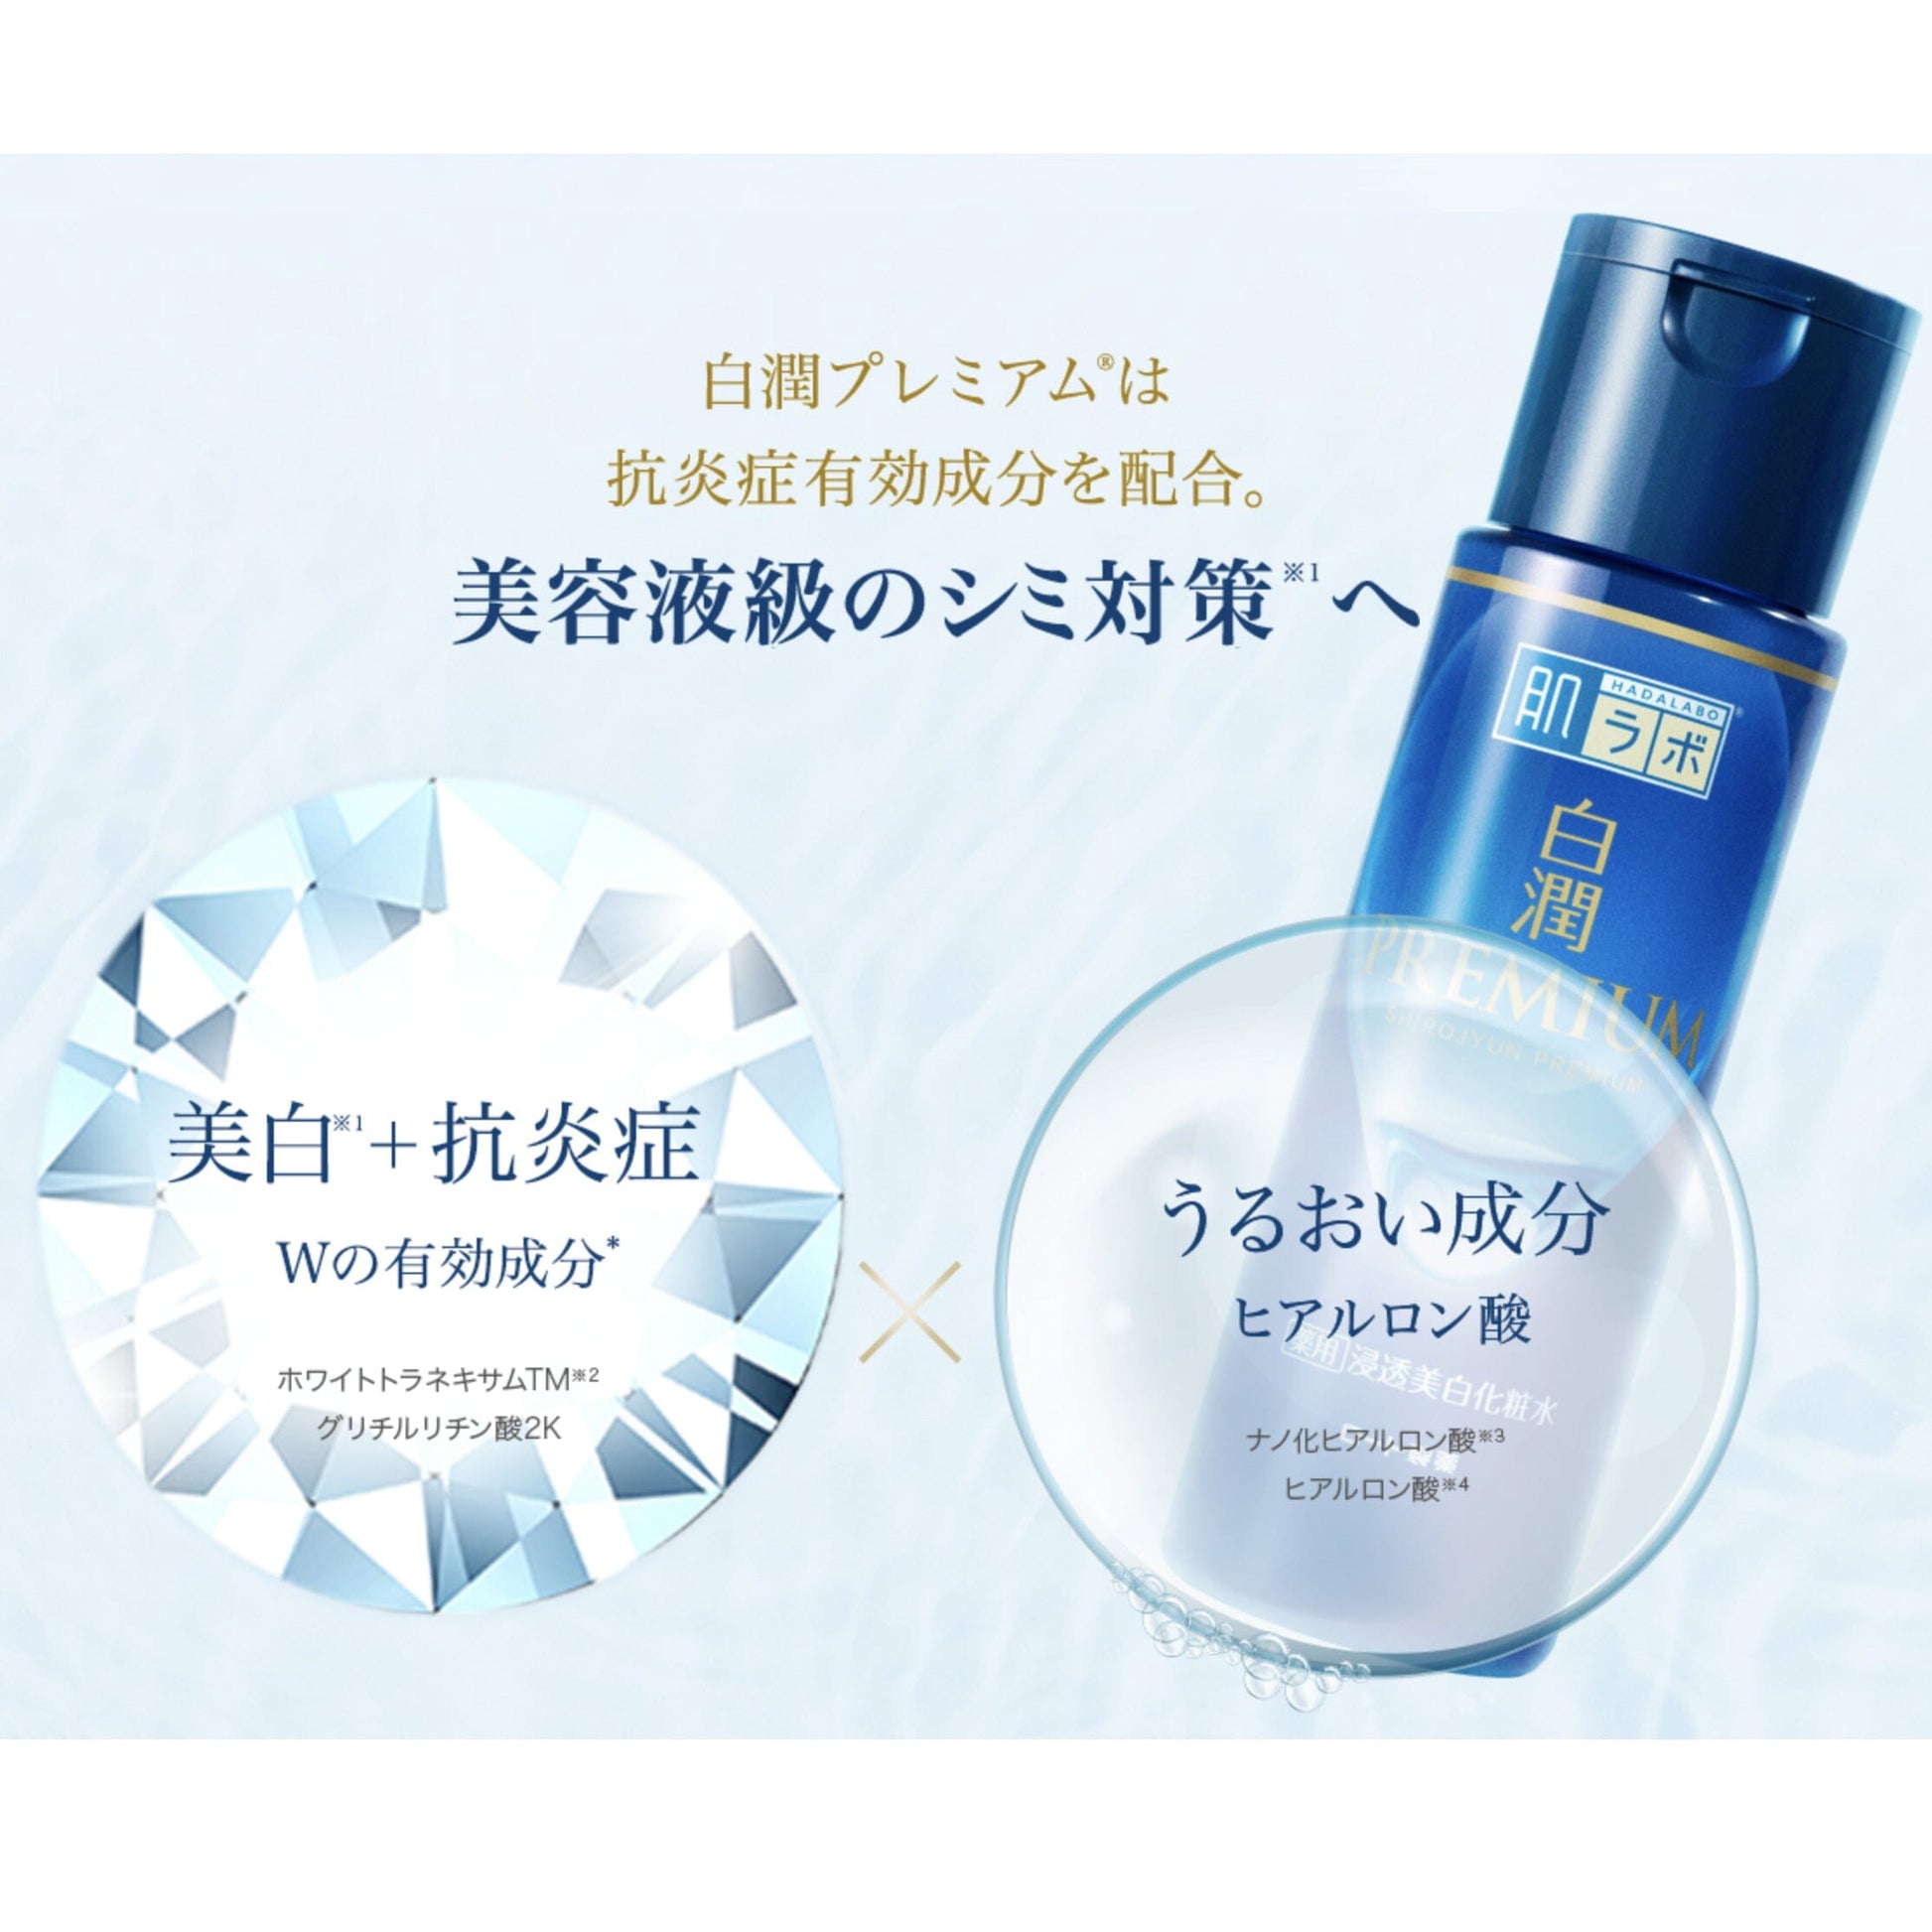 Rohto Hadalabo Shirojyun Premium Whitening Facial Lotion